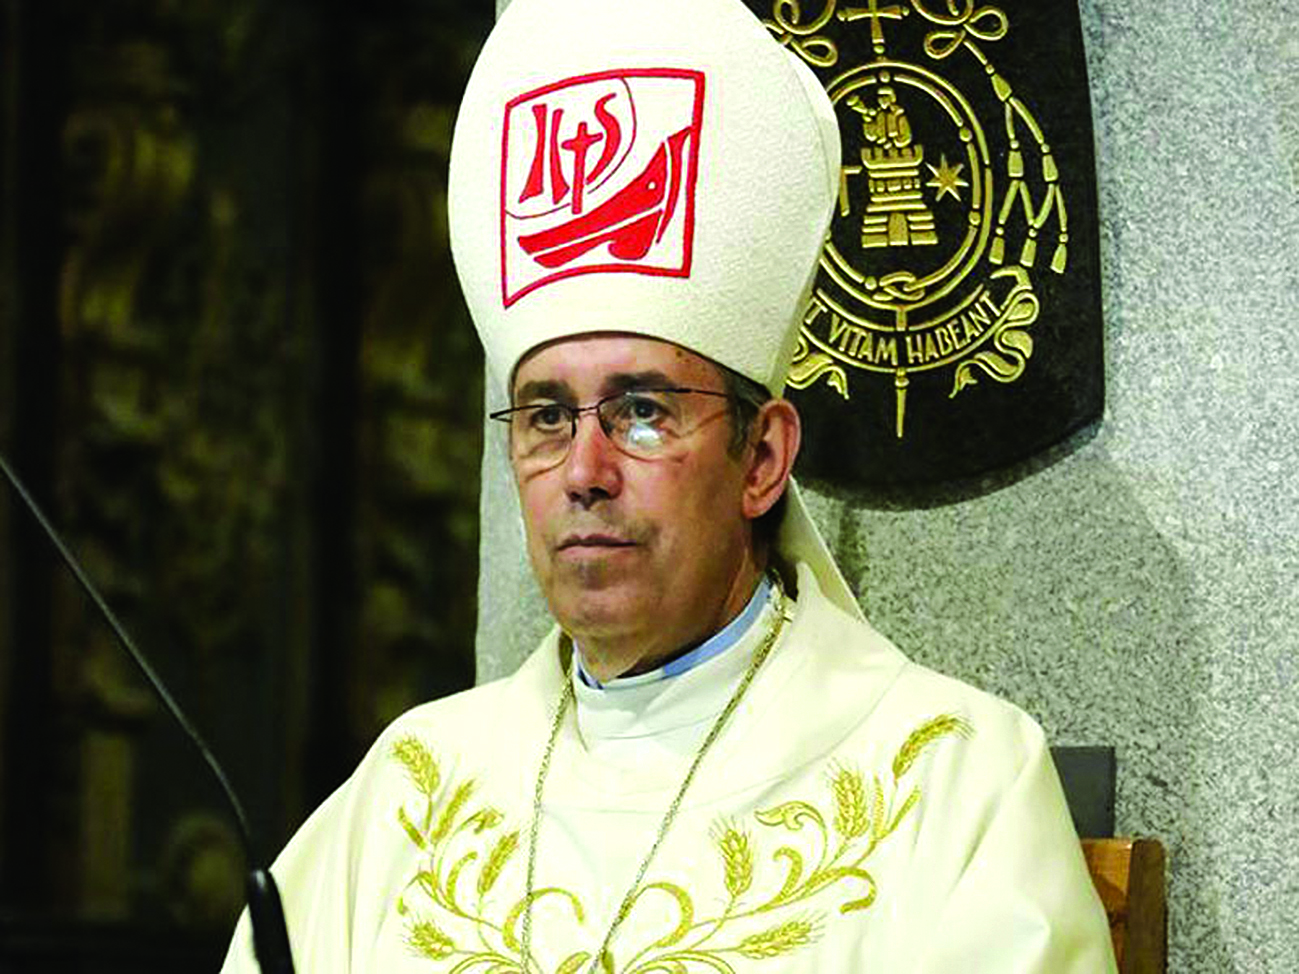 A Igreja de Viseu… espera o seu novo Bispo